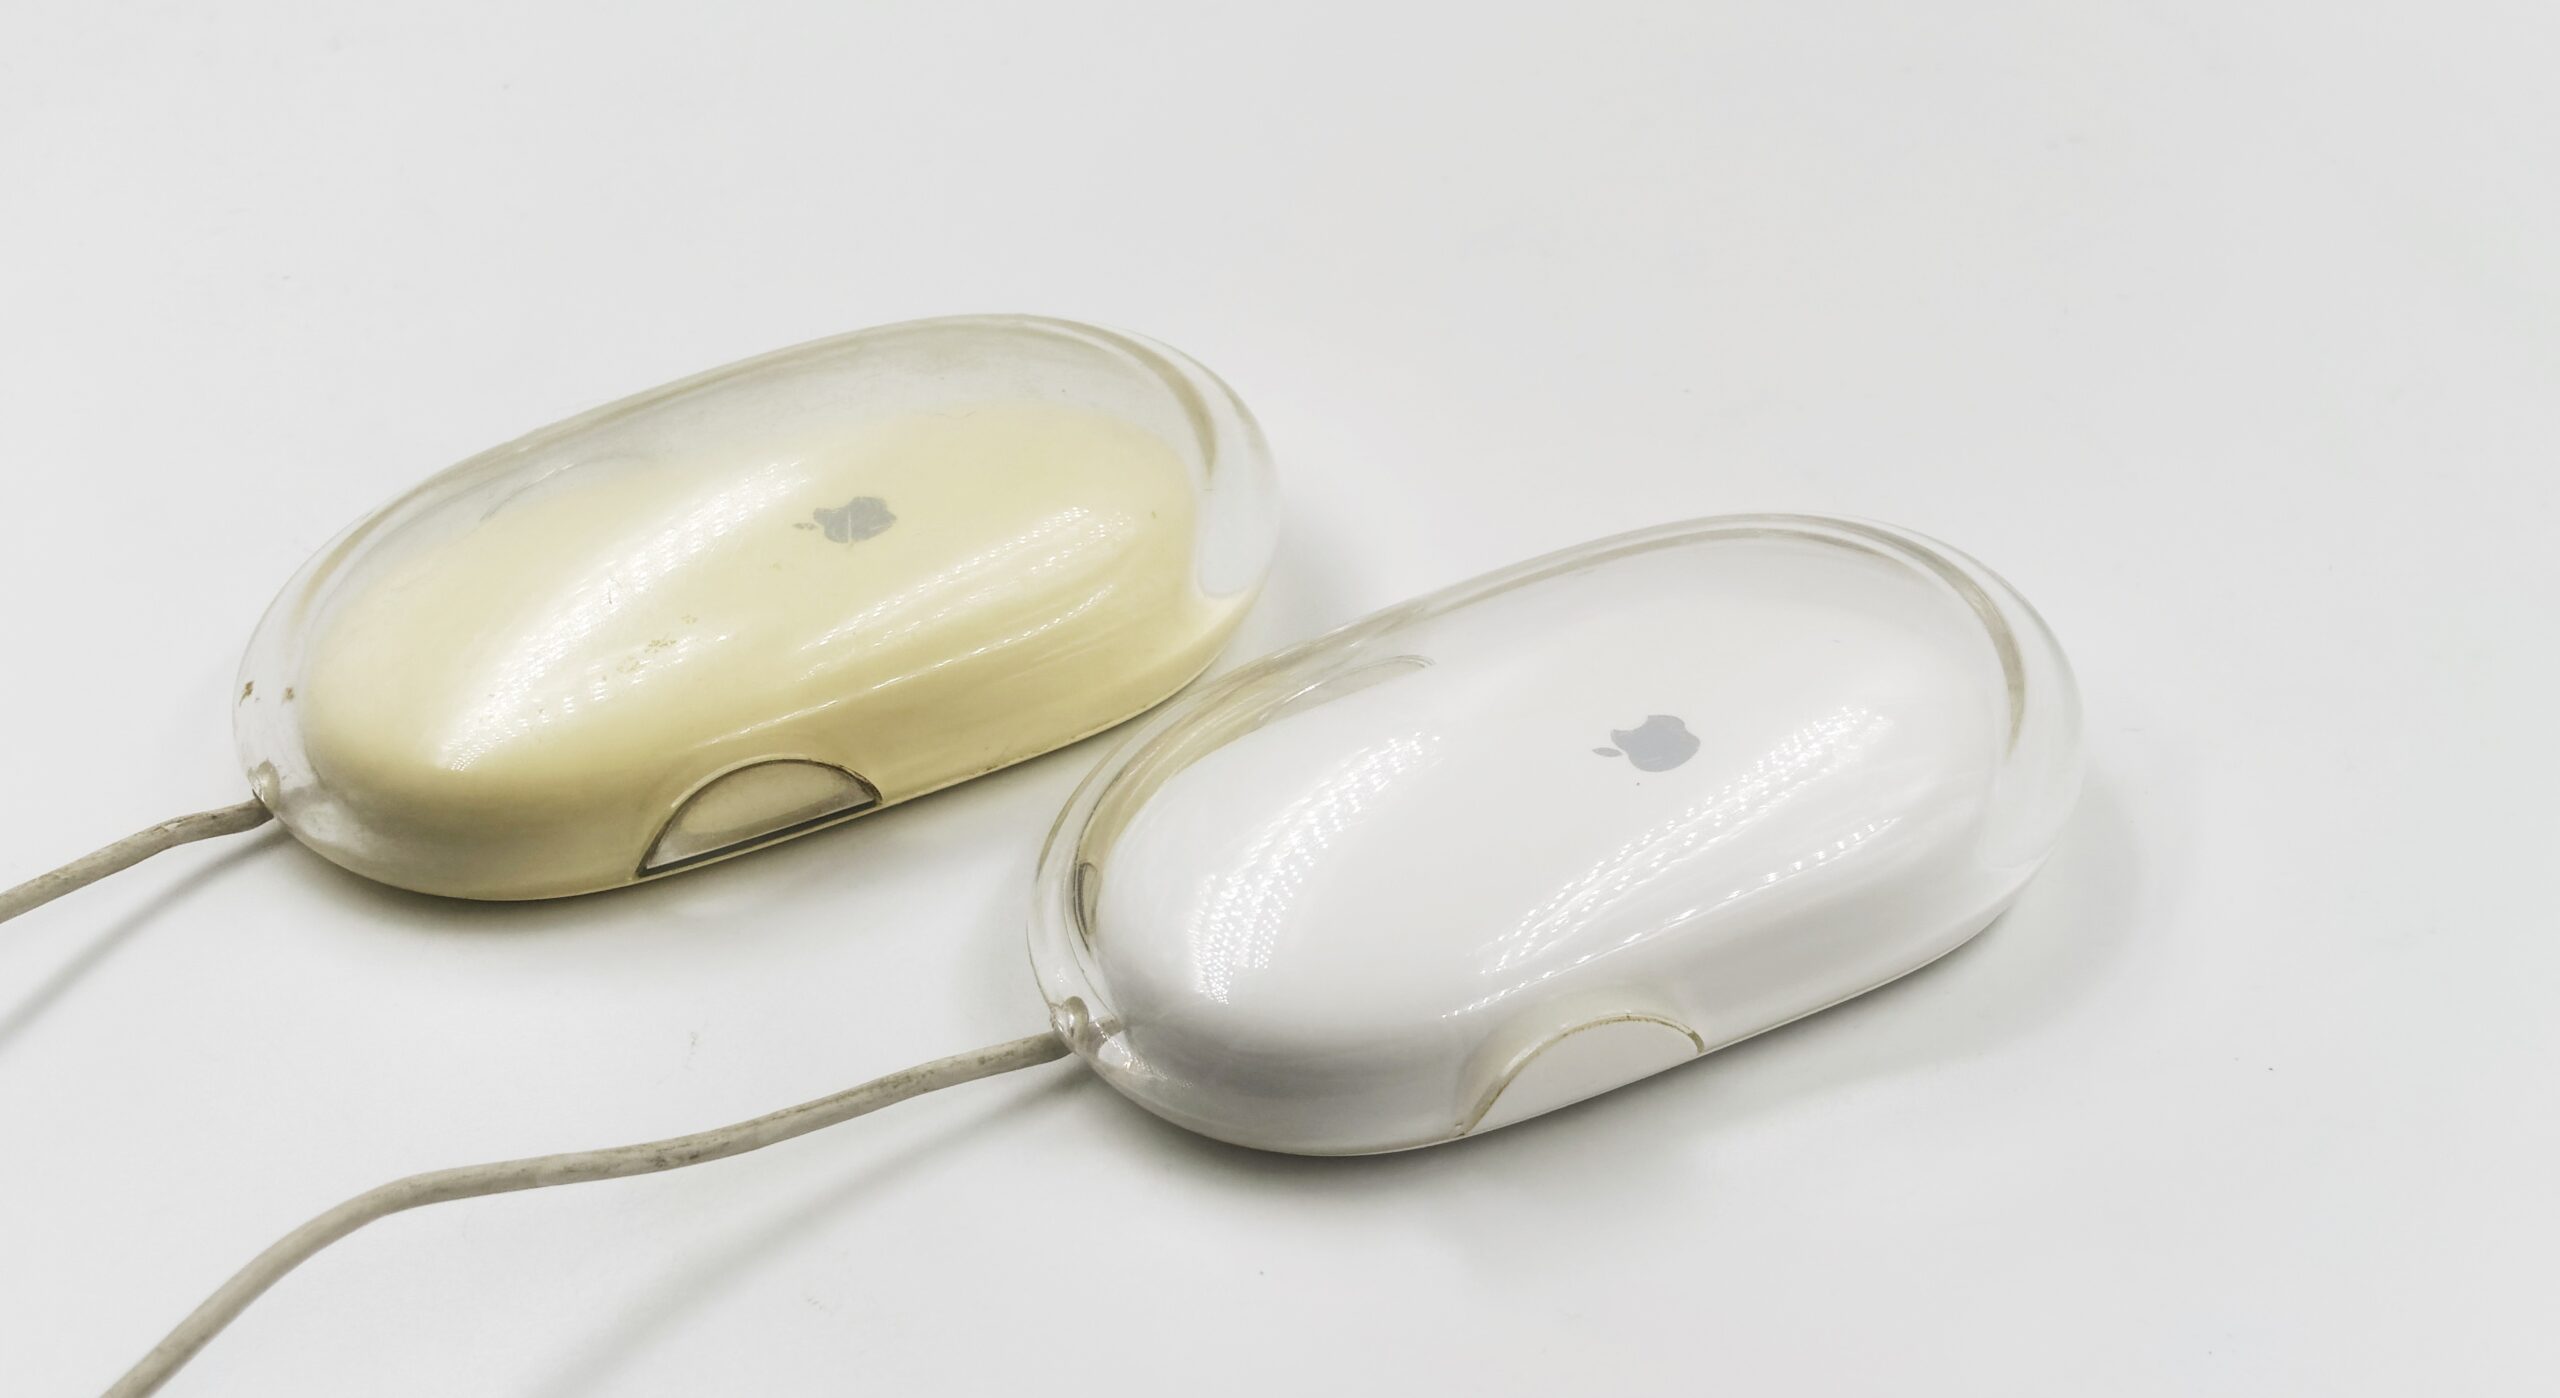 Pro Mouse : la souris ergonomique d'Apple qui n'existe pas (encore)